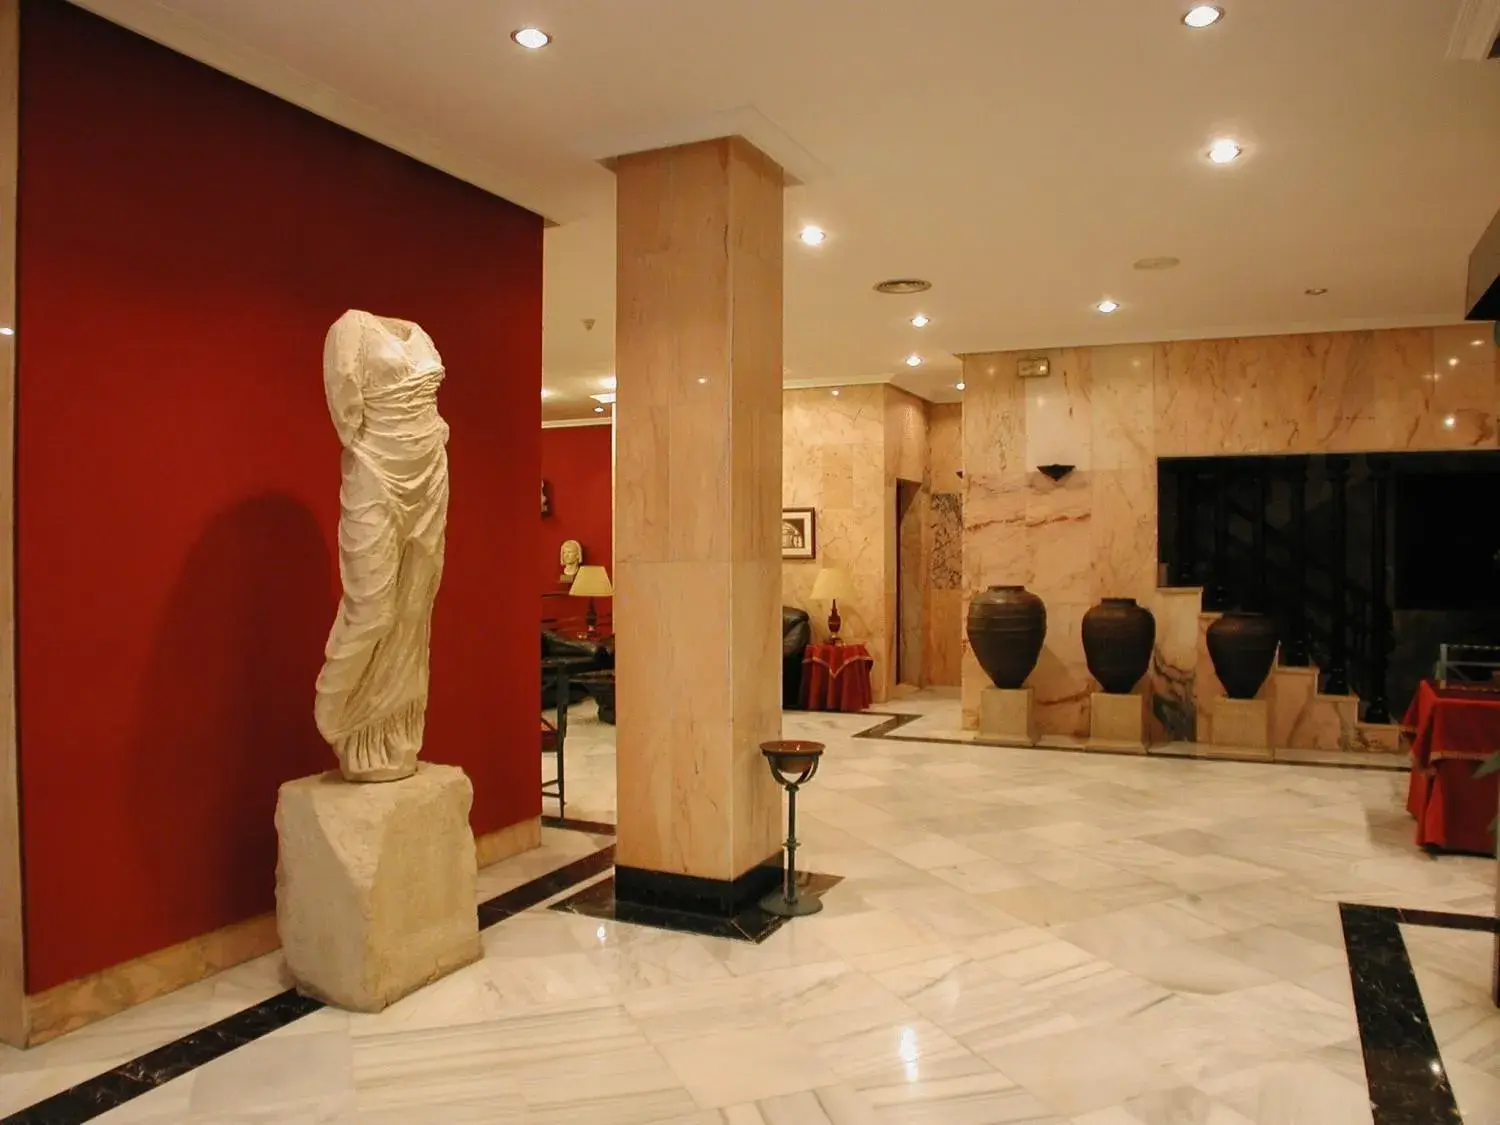 Lobby or reception, Lobby/Reception in Nova Roma